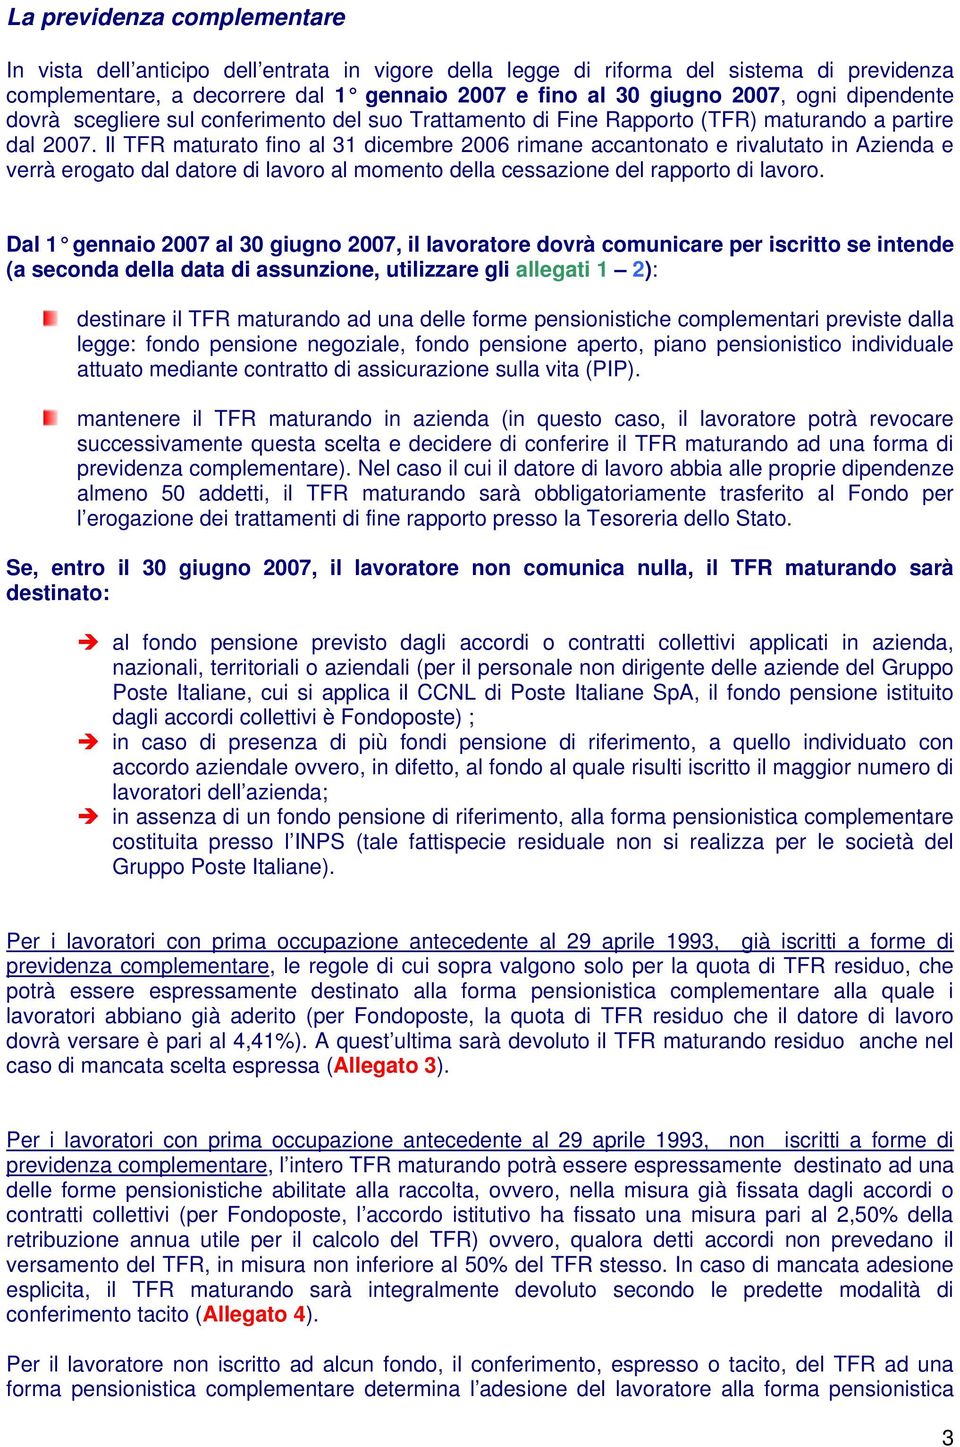 Il TFR maturato fino al 31 dicembre 2006 rimane accantonato e rivalutato in Azienda e verrà erogato dal datore di lavoro al momento della cessazione del rapporto di lavoro.